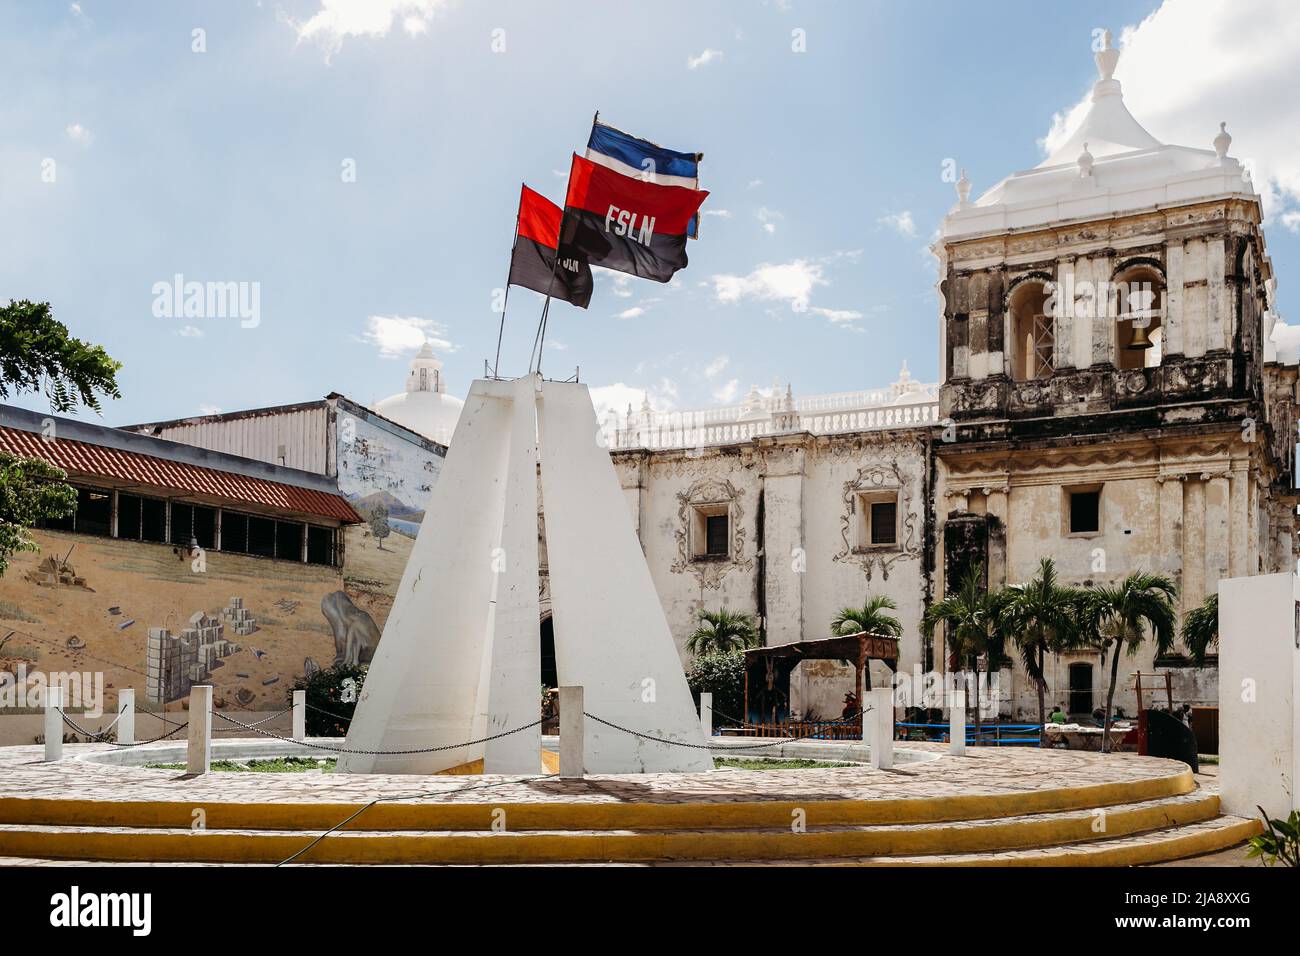 Sandinista Denkmal für die Helden und Märtyrer von Leon.Weiße Pyramide Denkmal für lokale Helden mit FSLN-Flagge auf der Oberseite - León, Nicaragua Stockfoto